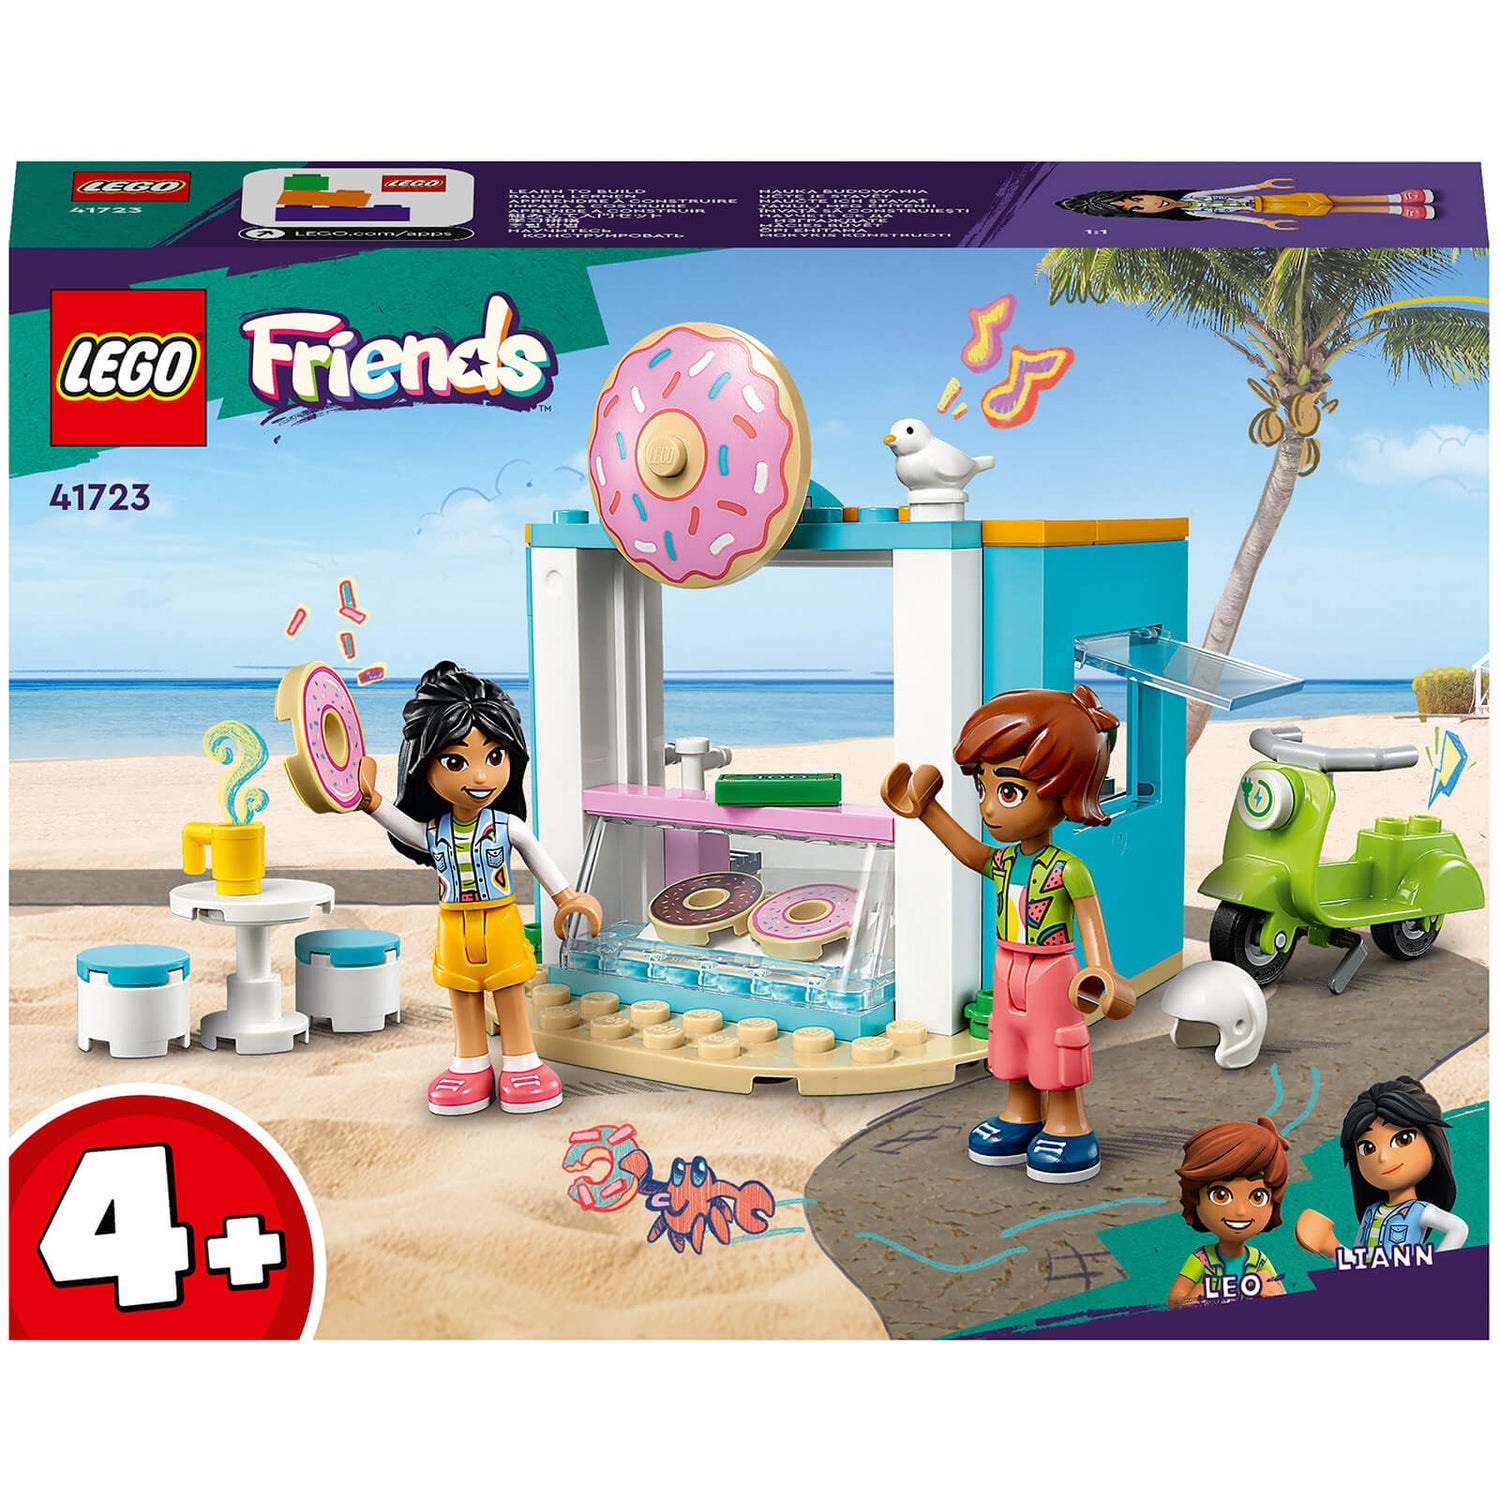 LEGO Friends: Donut Shop Building Set (41723) Toys - Zavvi US